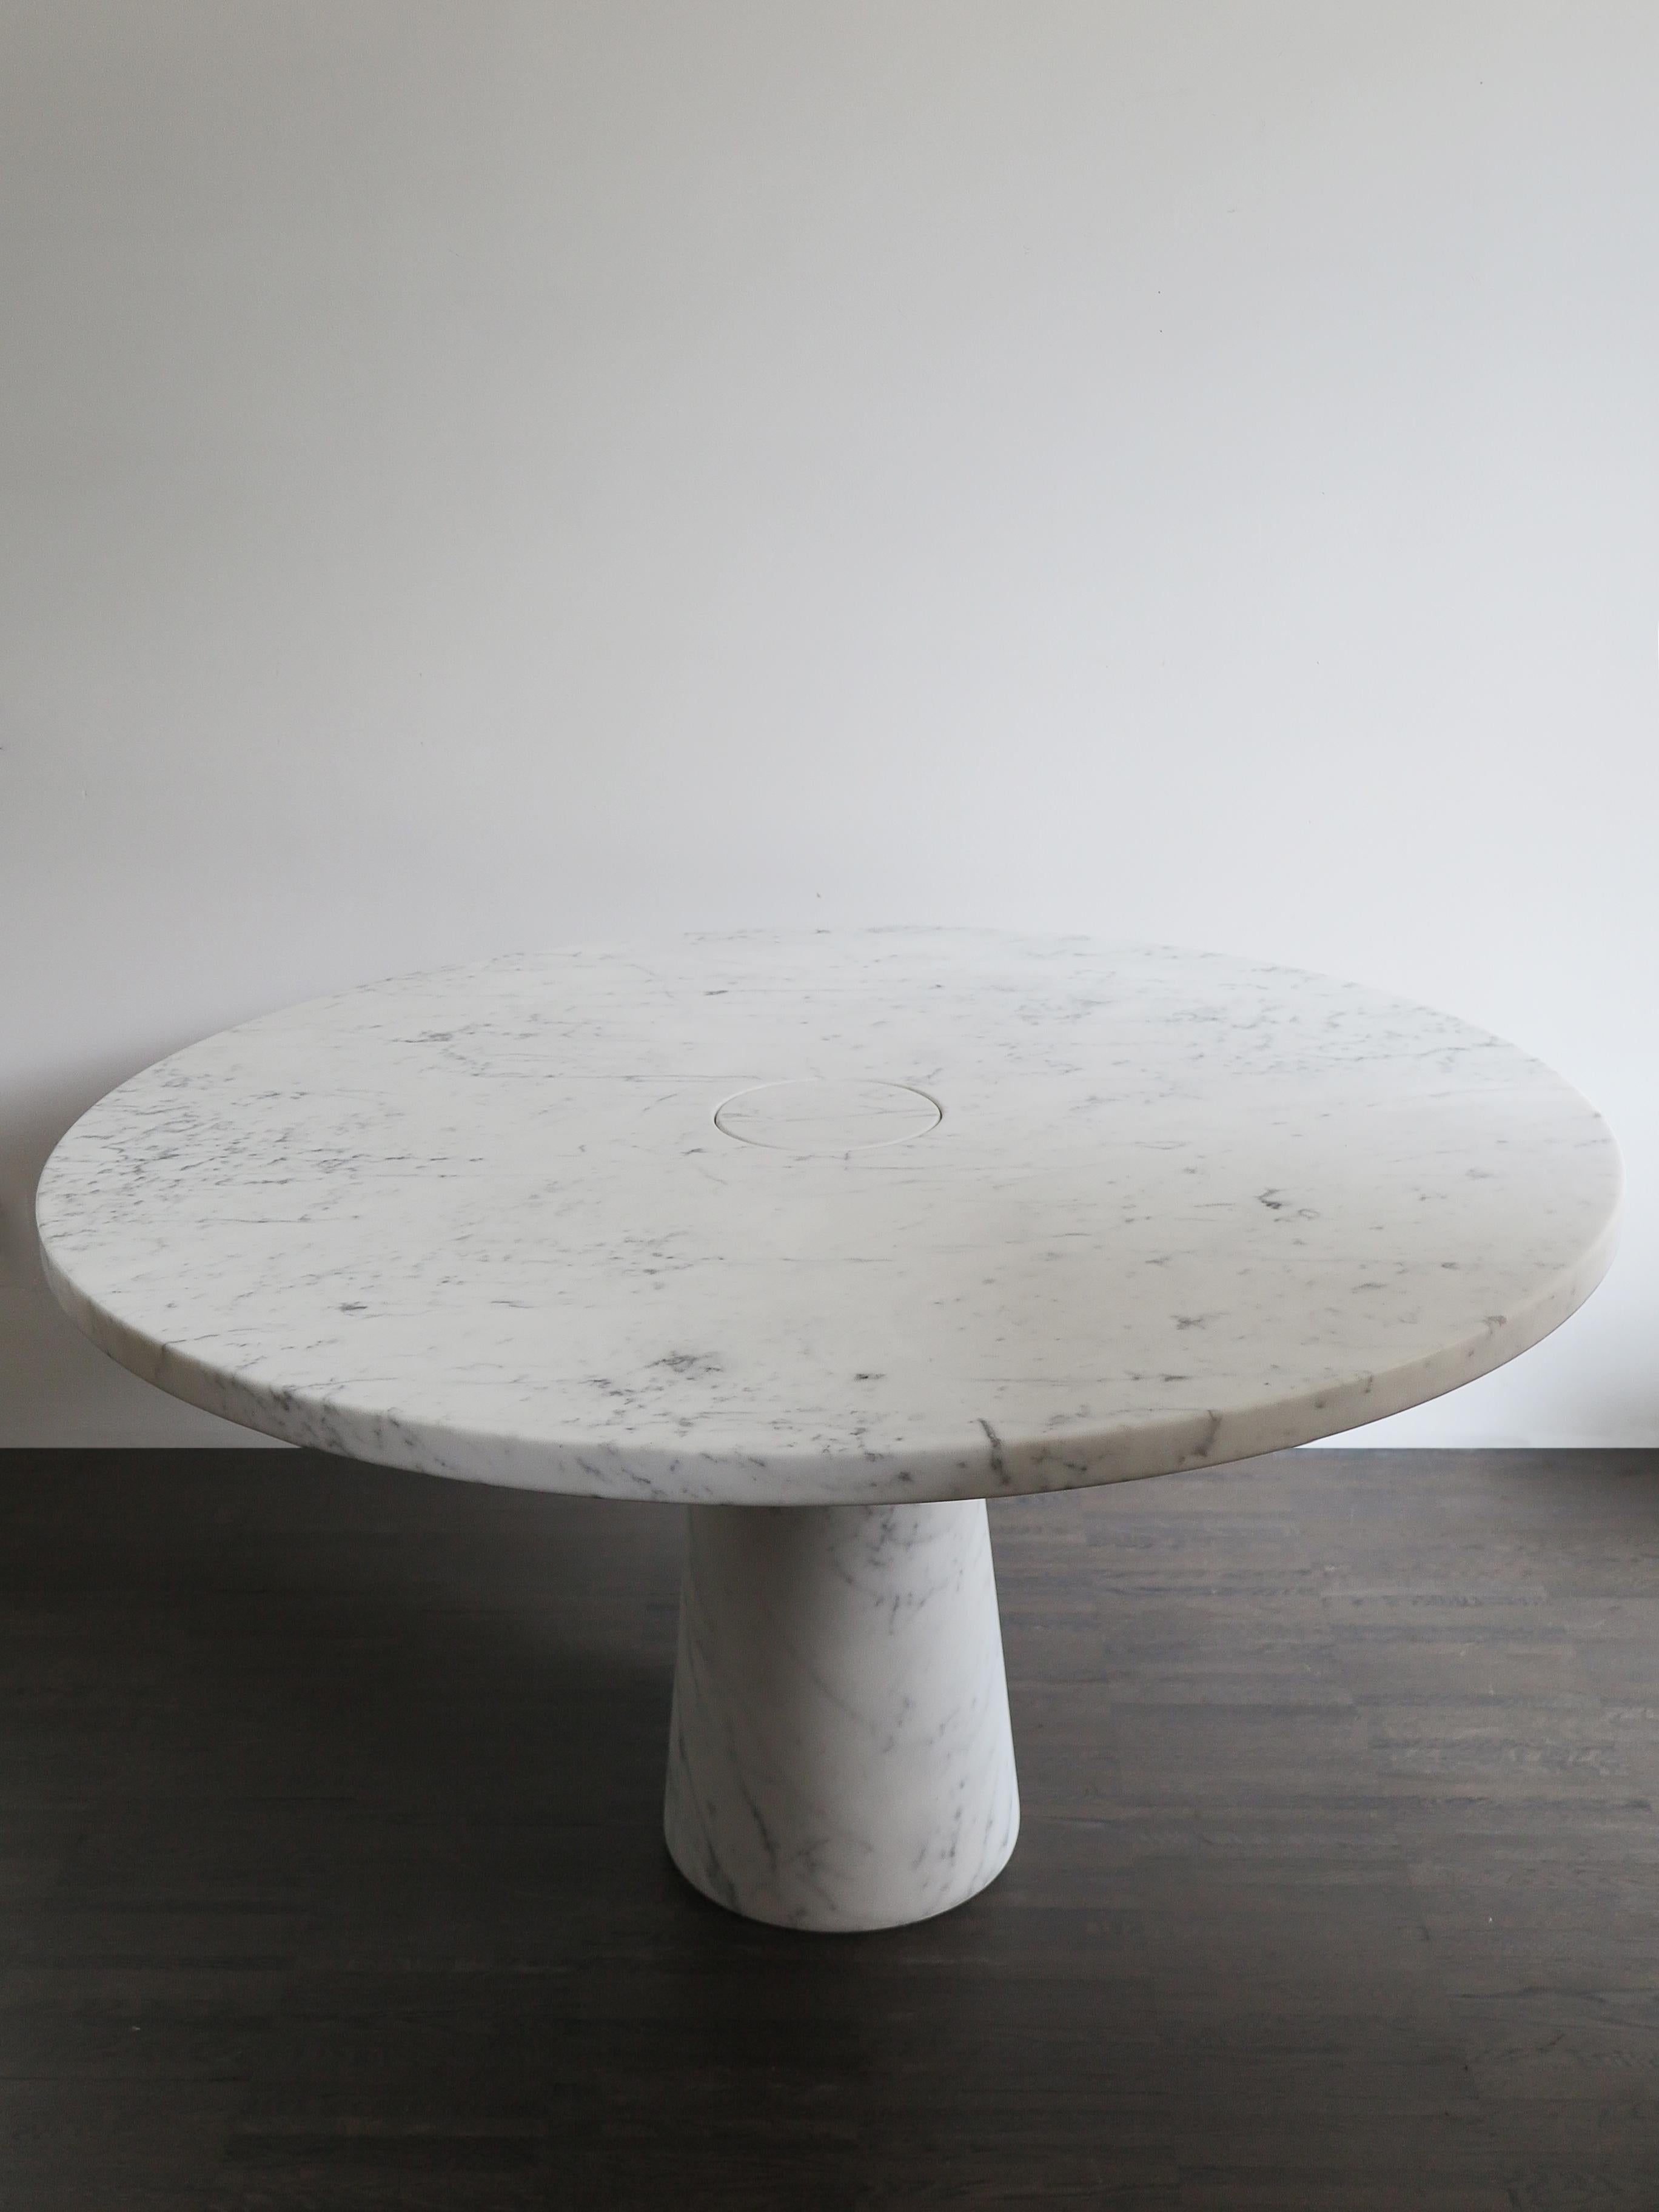 Der italienische Tisch Eros aus weißem Carrara-Marmor wurde 1971 von Angelo Mangiarotti entworfen. Der Tisch Eros besteht aus einer auf der Schwerkraft beruhenden Einbettung zwischen Platte und Bein, die durch den kegelstumpfförmigen Querschnitt des